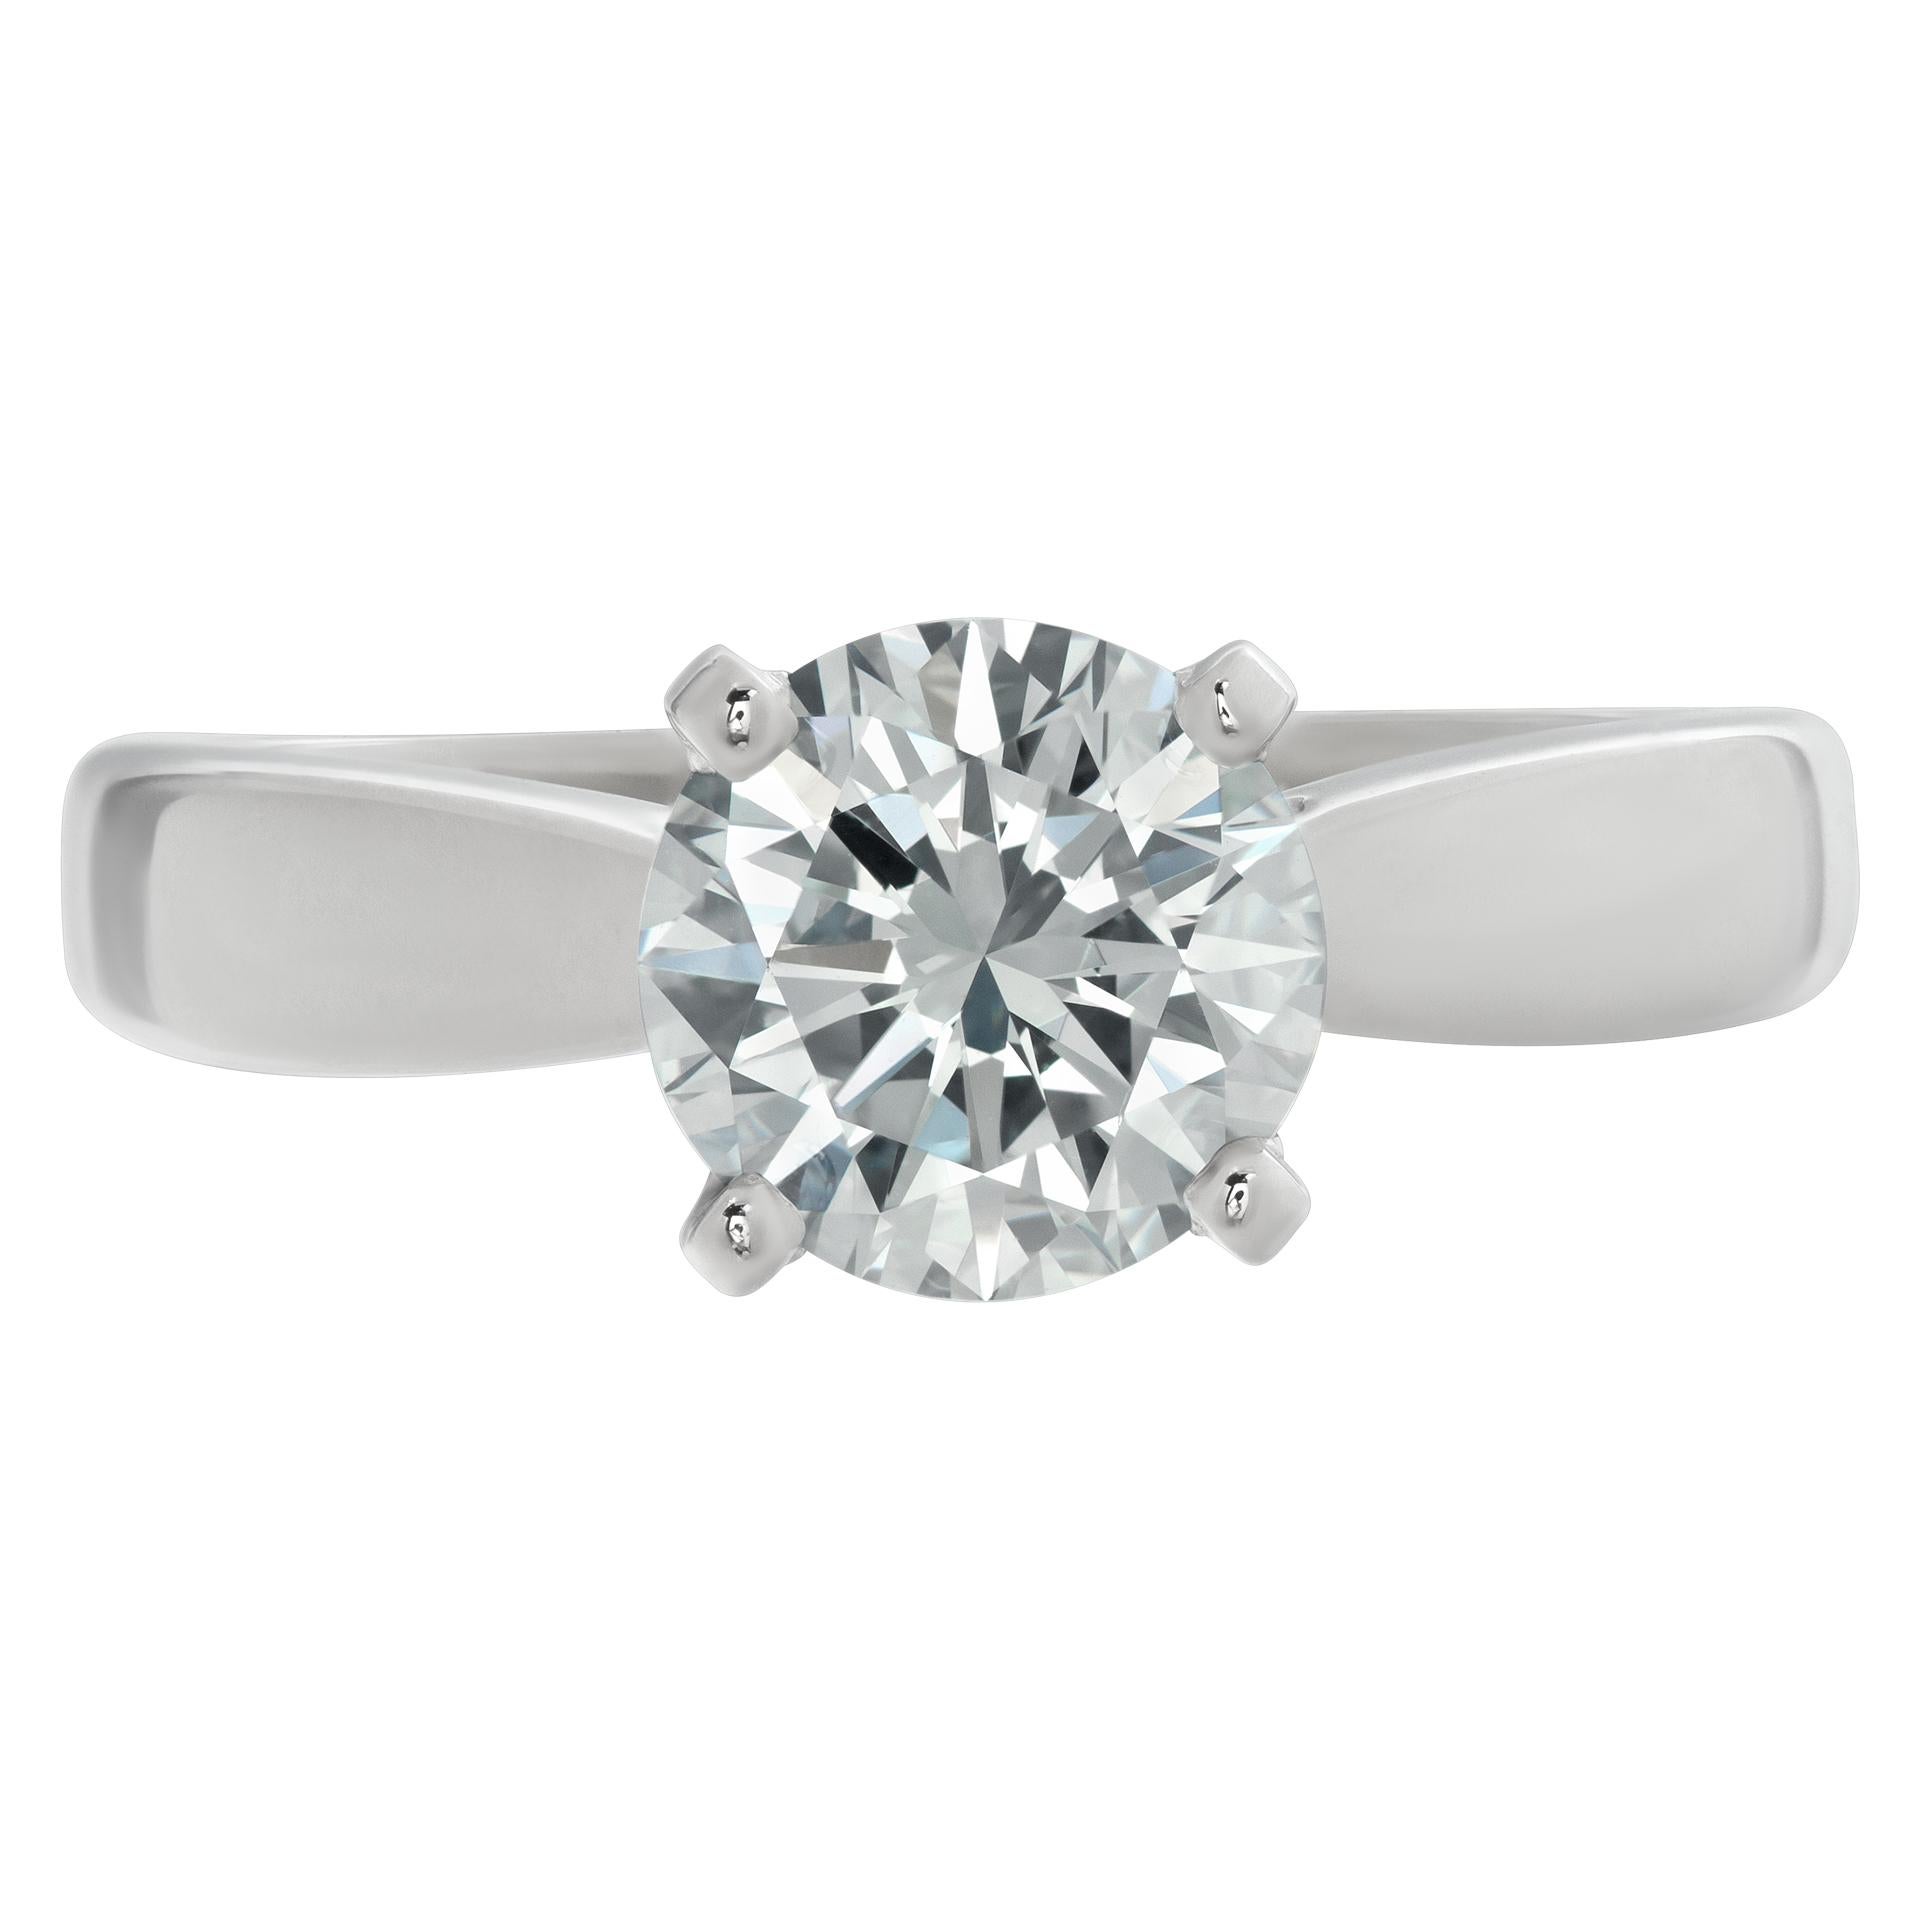 GIA-zertifizierter runder Diamant mit Brillantschliff von 1,78 Karat (Farbe I, Reinheit VS1, ausgezeichneter Schliff, ausgezeichneter Schliff, ausgezeichnete Symmetrie) in klassischer 4-Zacken-Platinfassung. Größe 7Dieser GIA-zertifizierte Ring ist